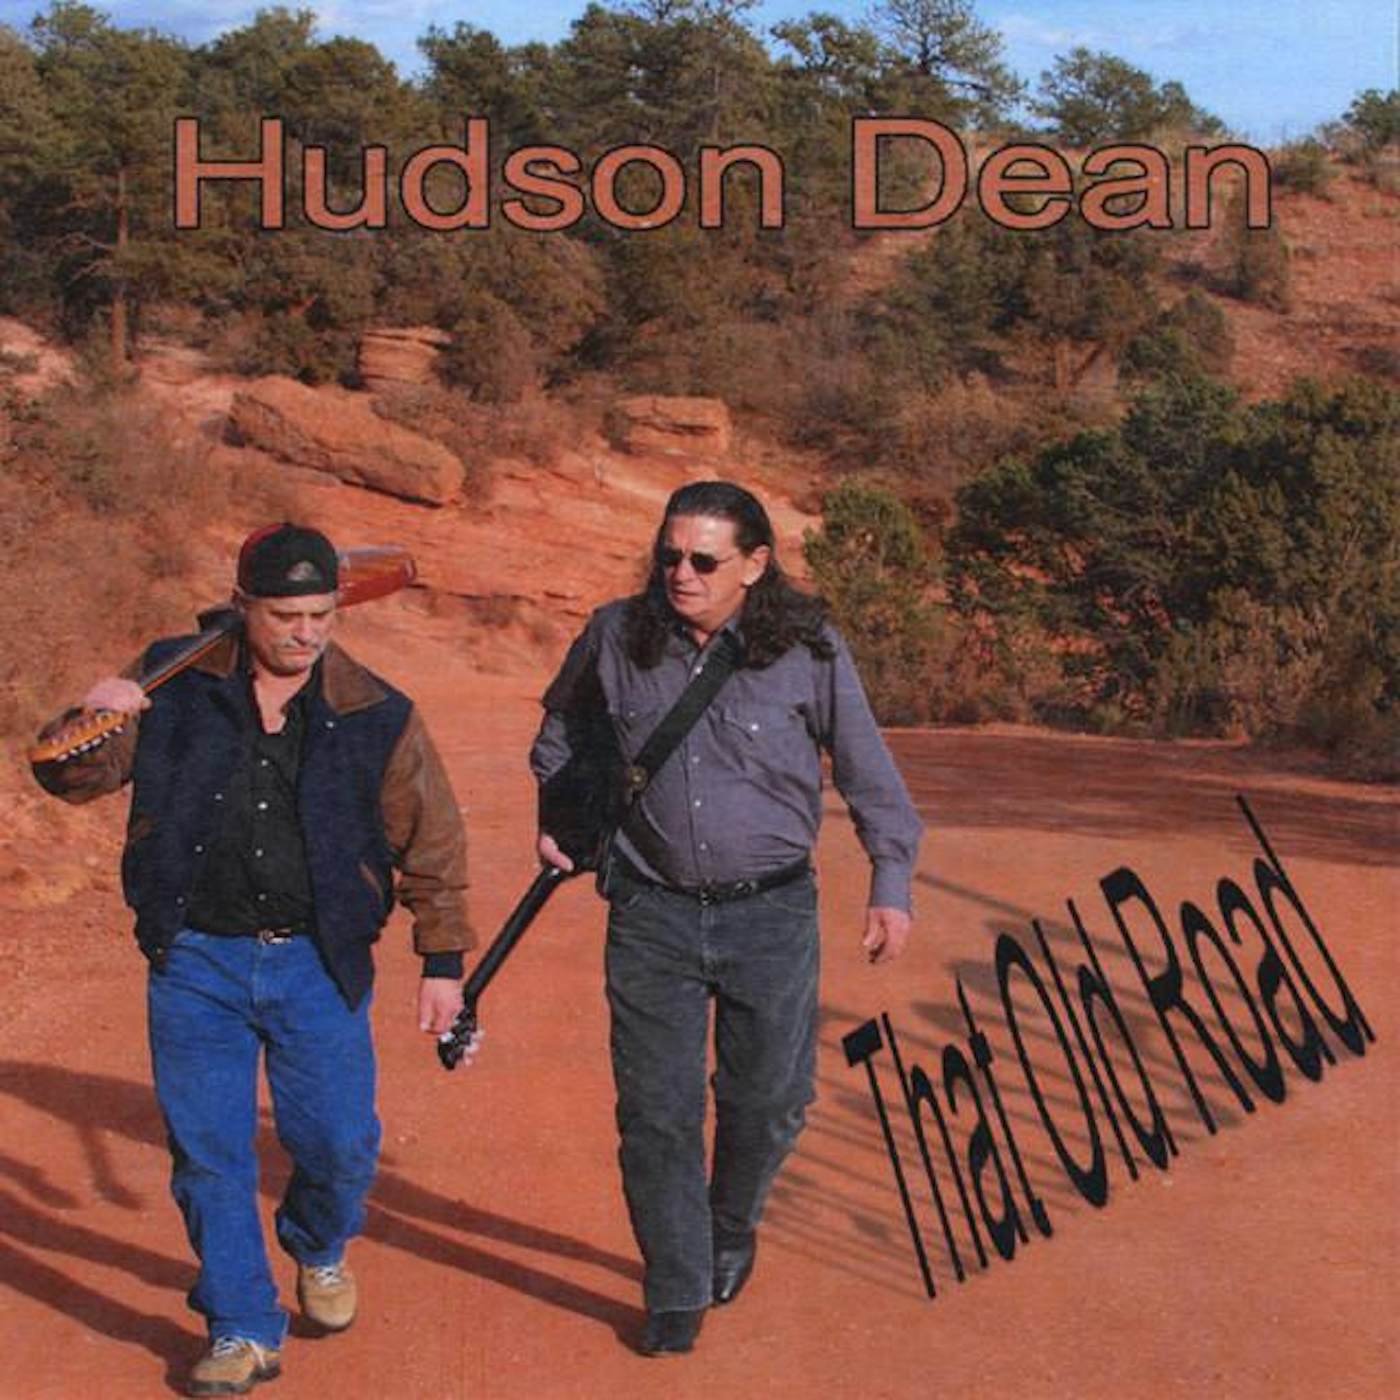 Hudson Dean